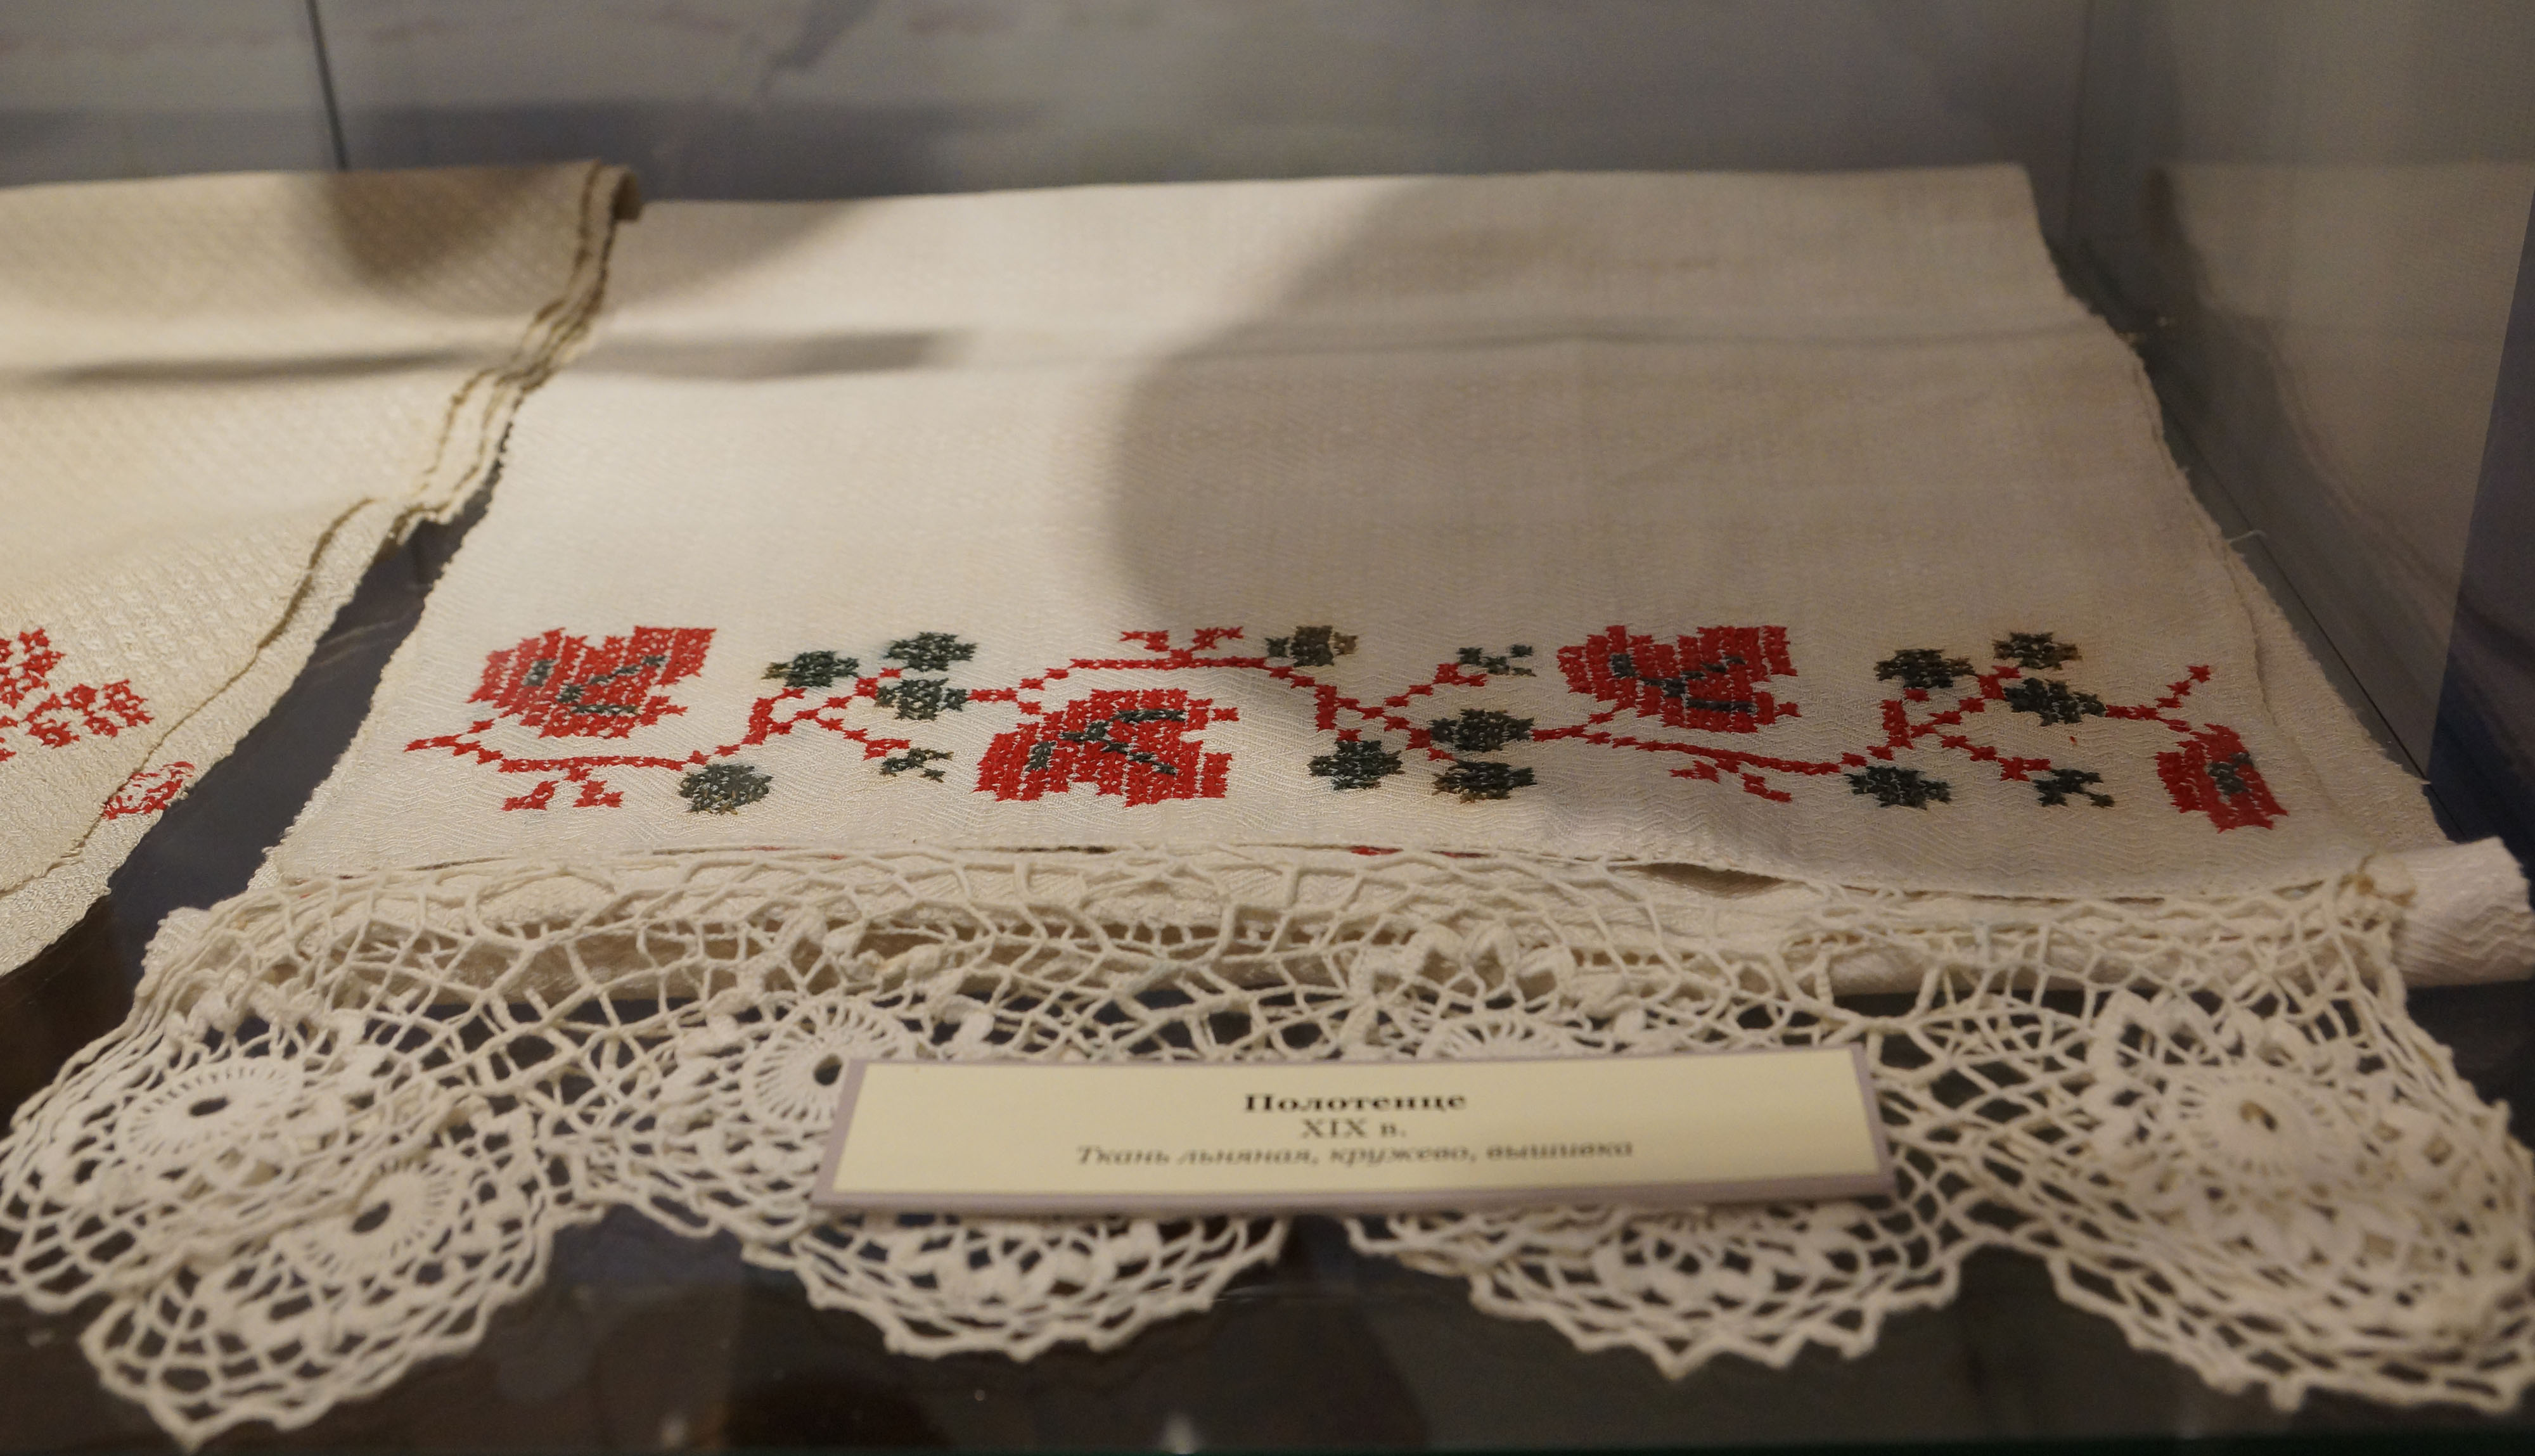 Полотенце. XIX век. Ткань льняная, кружево, вышивка.